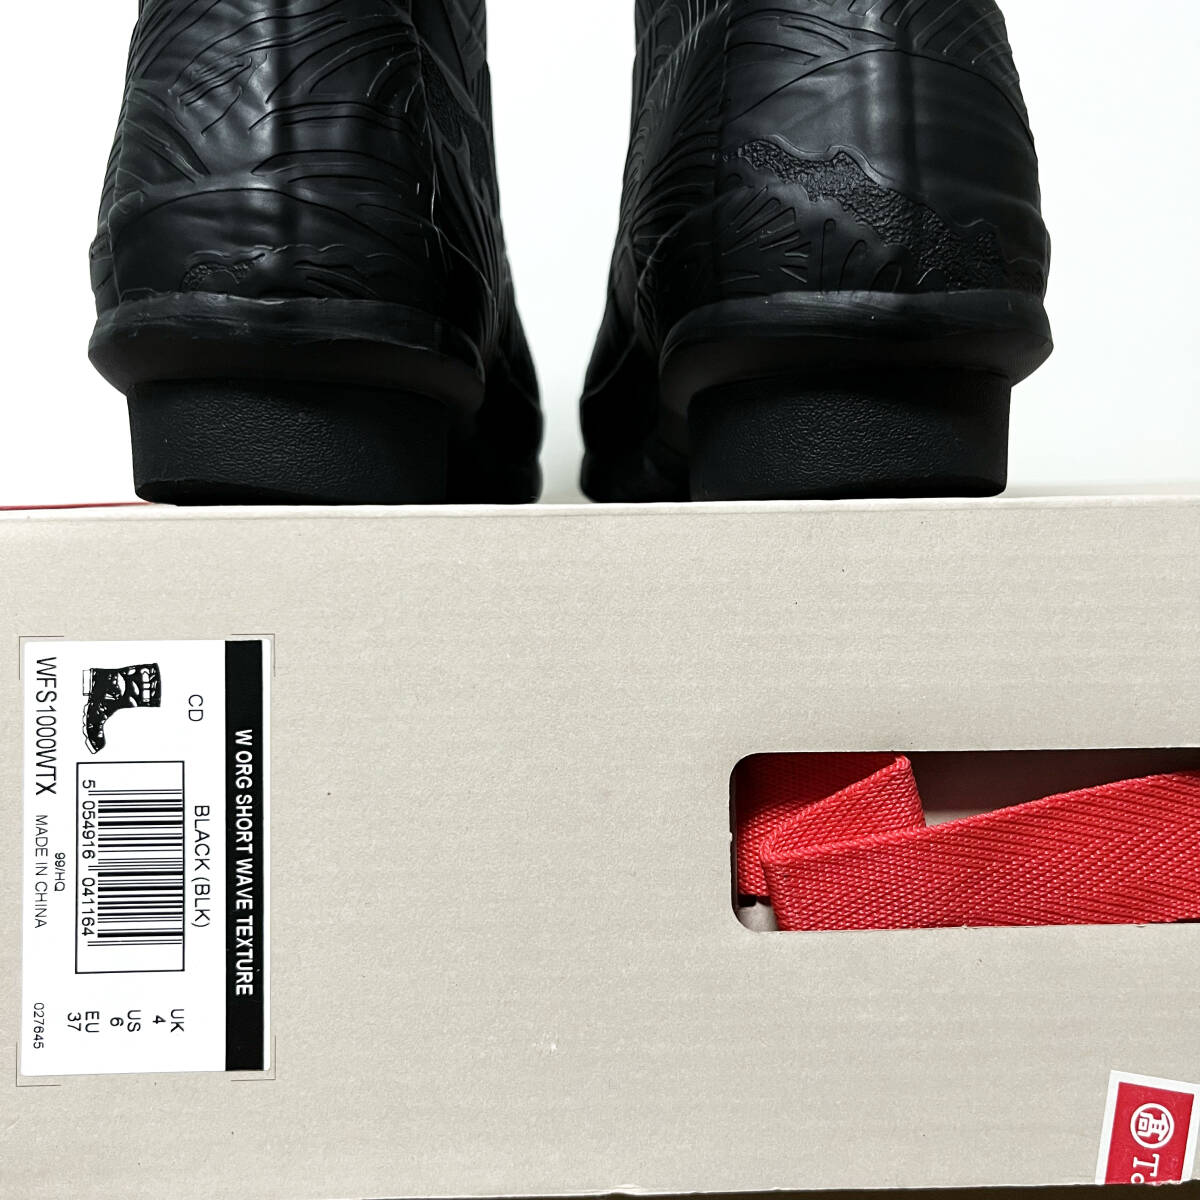 【23.0cm / US6】HUNTER W ORG SHORT WAVE TEXTURE ハンター レインブーツ 長靴 ショート ウェーブ テクスチャー BLACK ブラック 黒